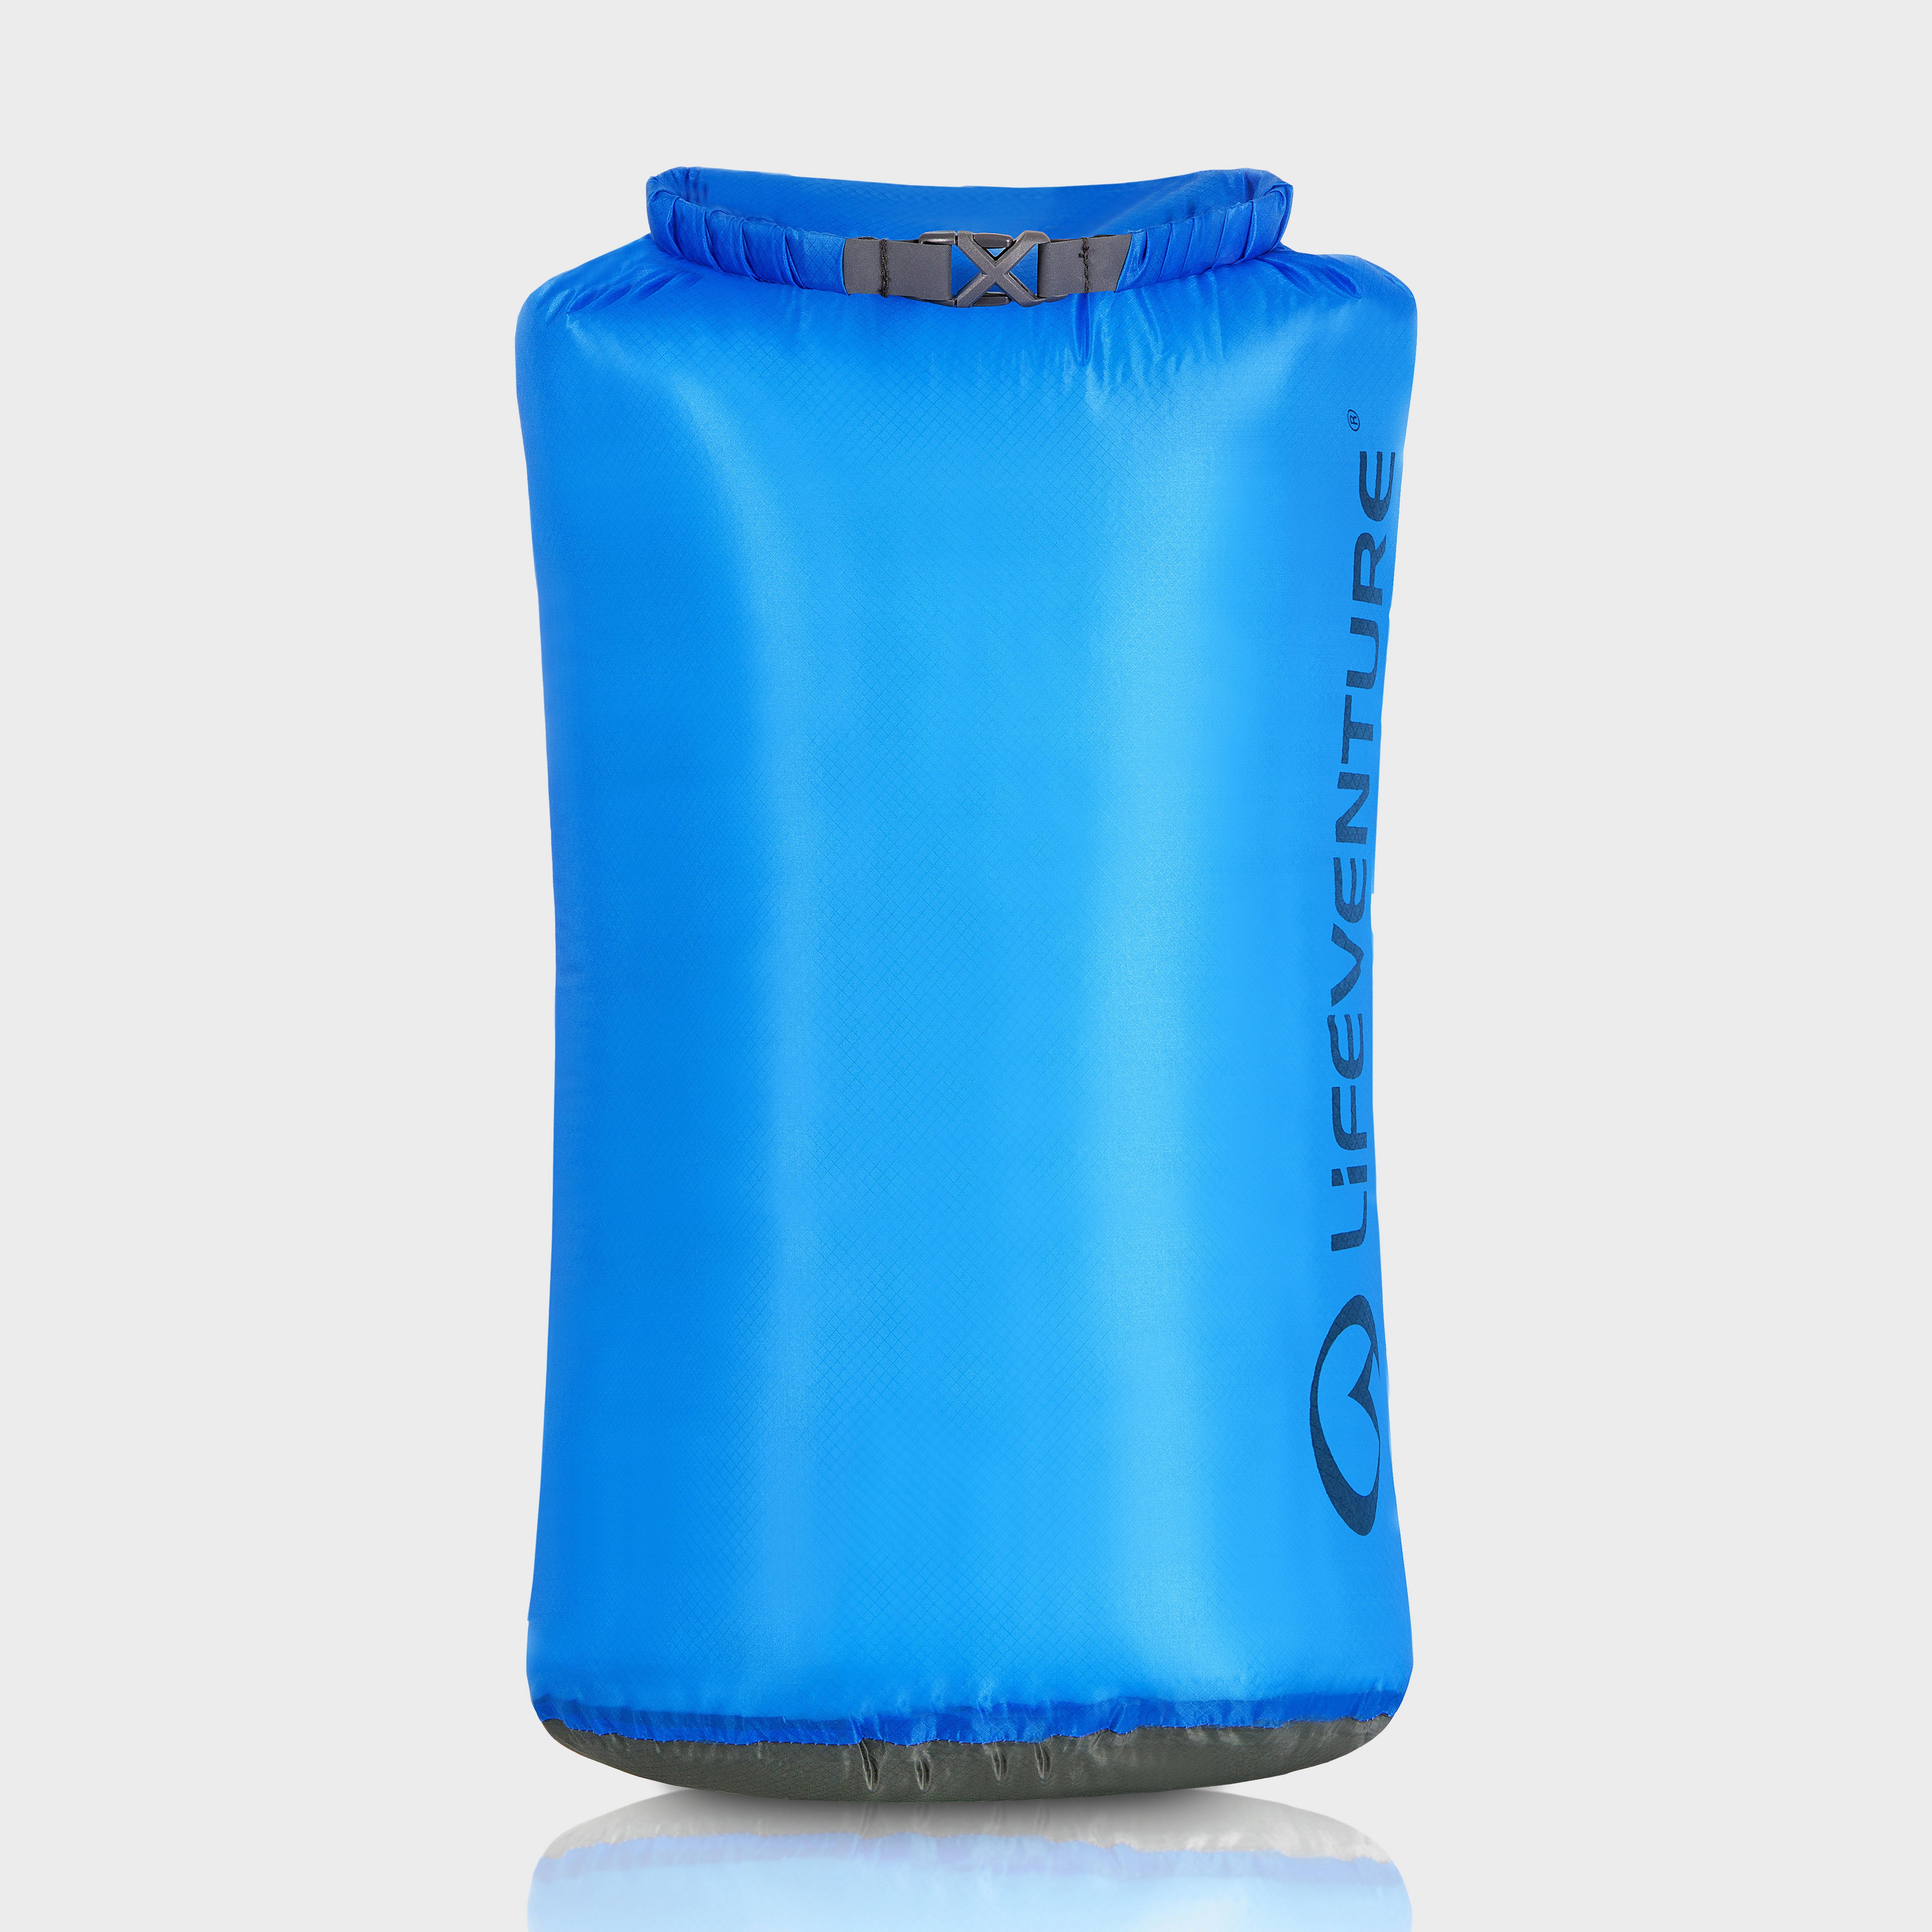 Lifeventure Ultralight 35l Dry Bag - Blue/35l  Blue/35l